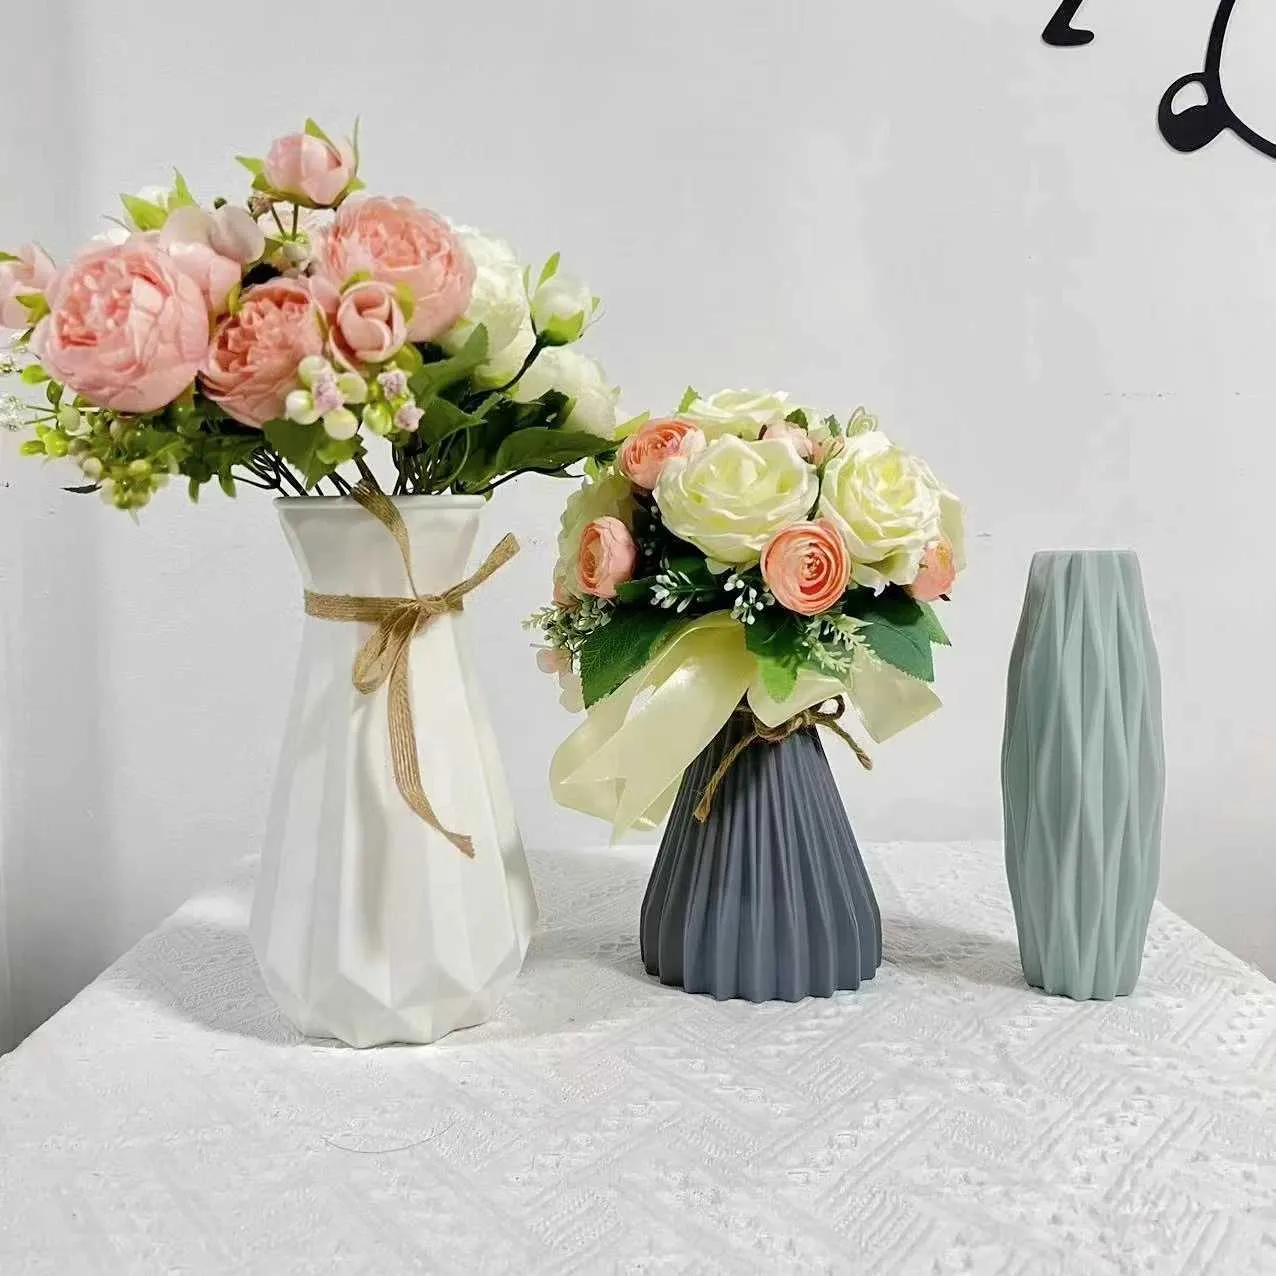 Вазы скандинавской пластиковой вазы нерушимые антицерамические цветочные вазы европейские имитационные имитационные ротаны.